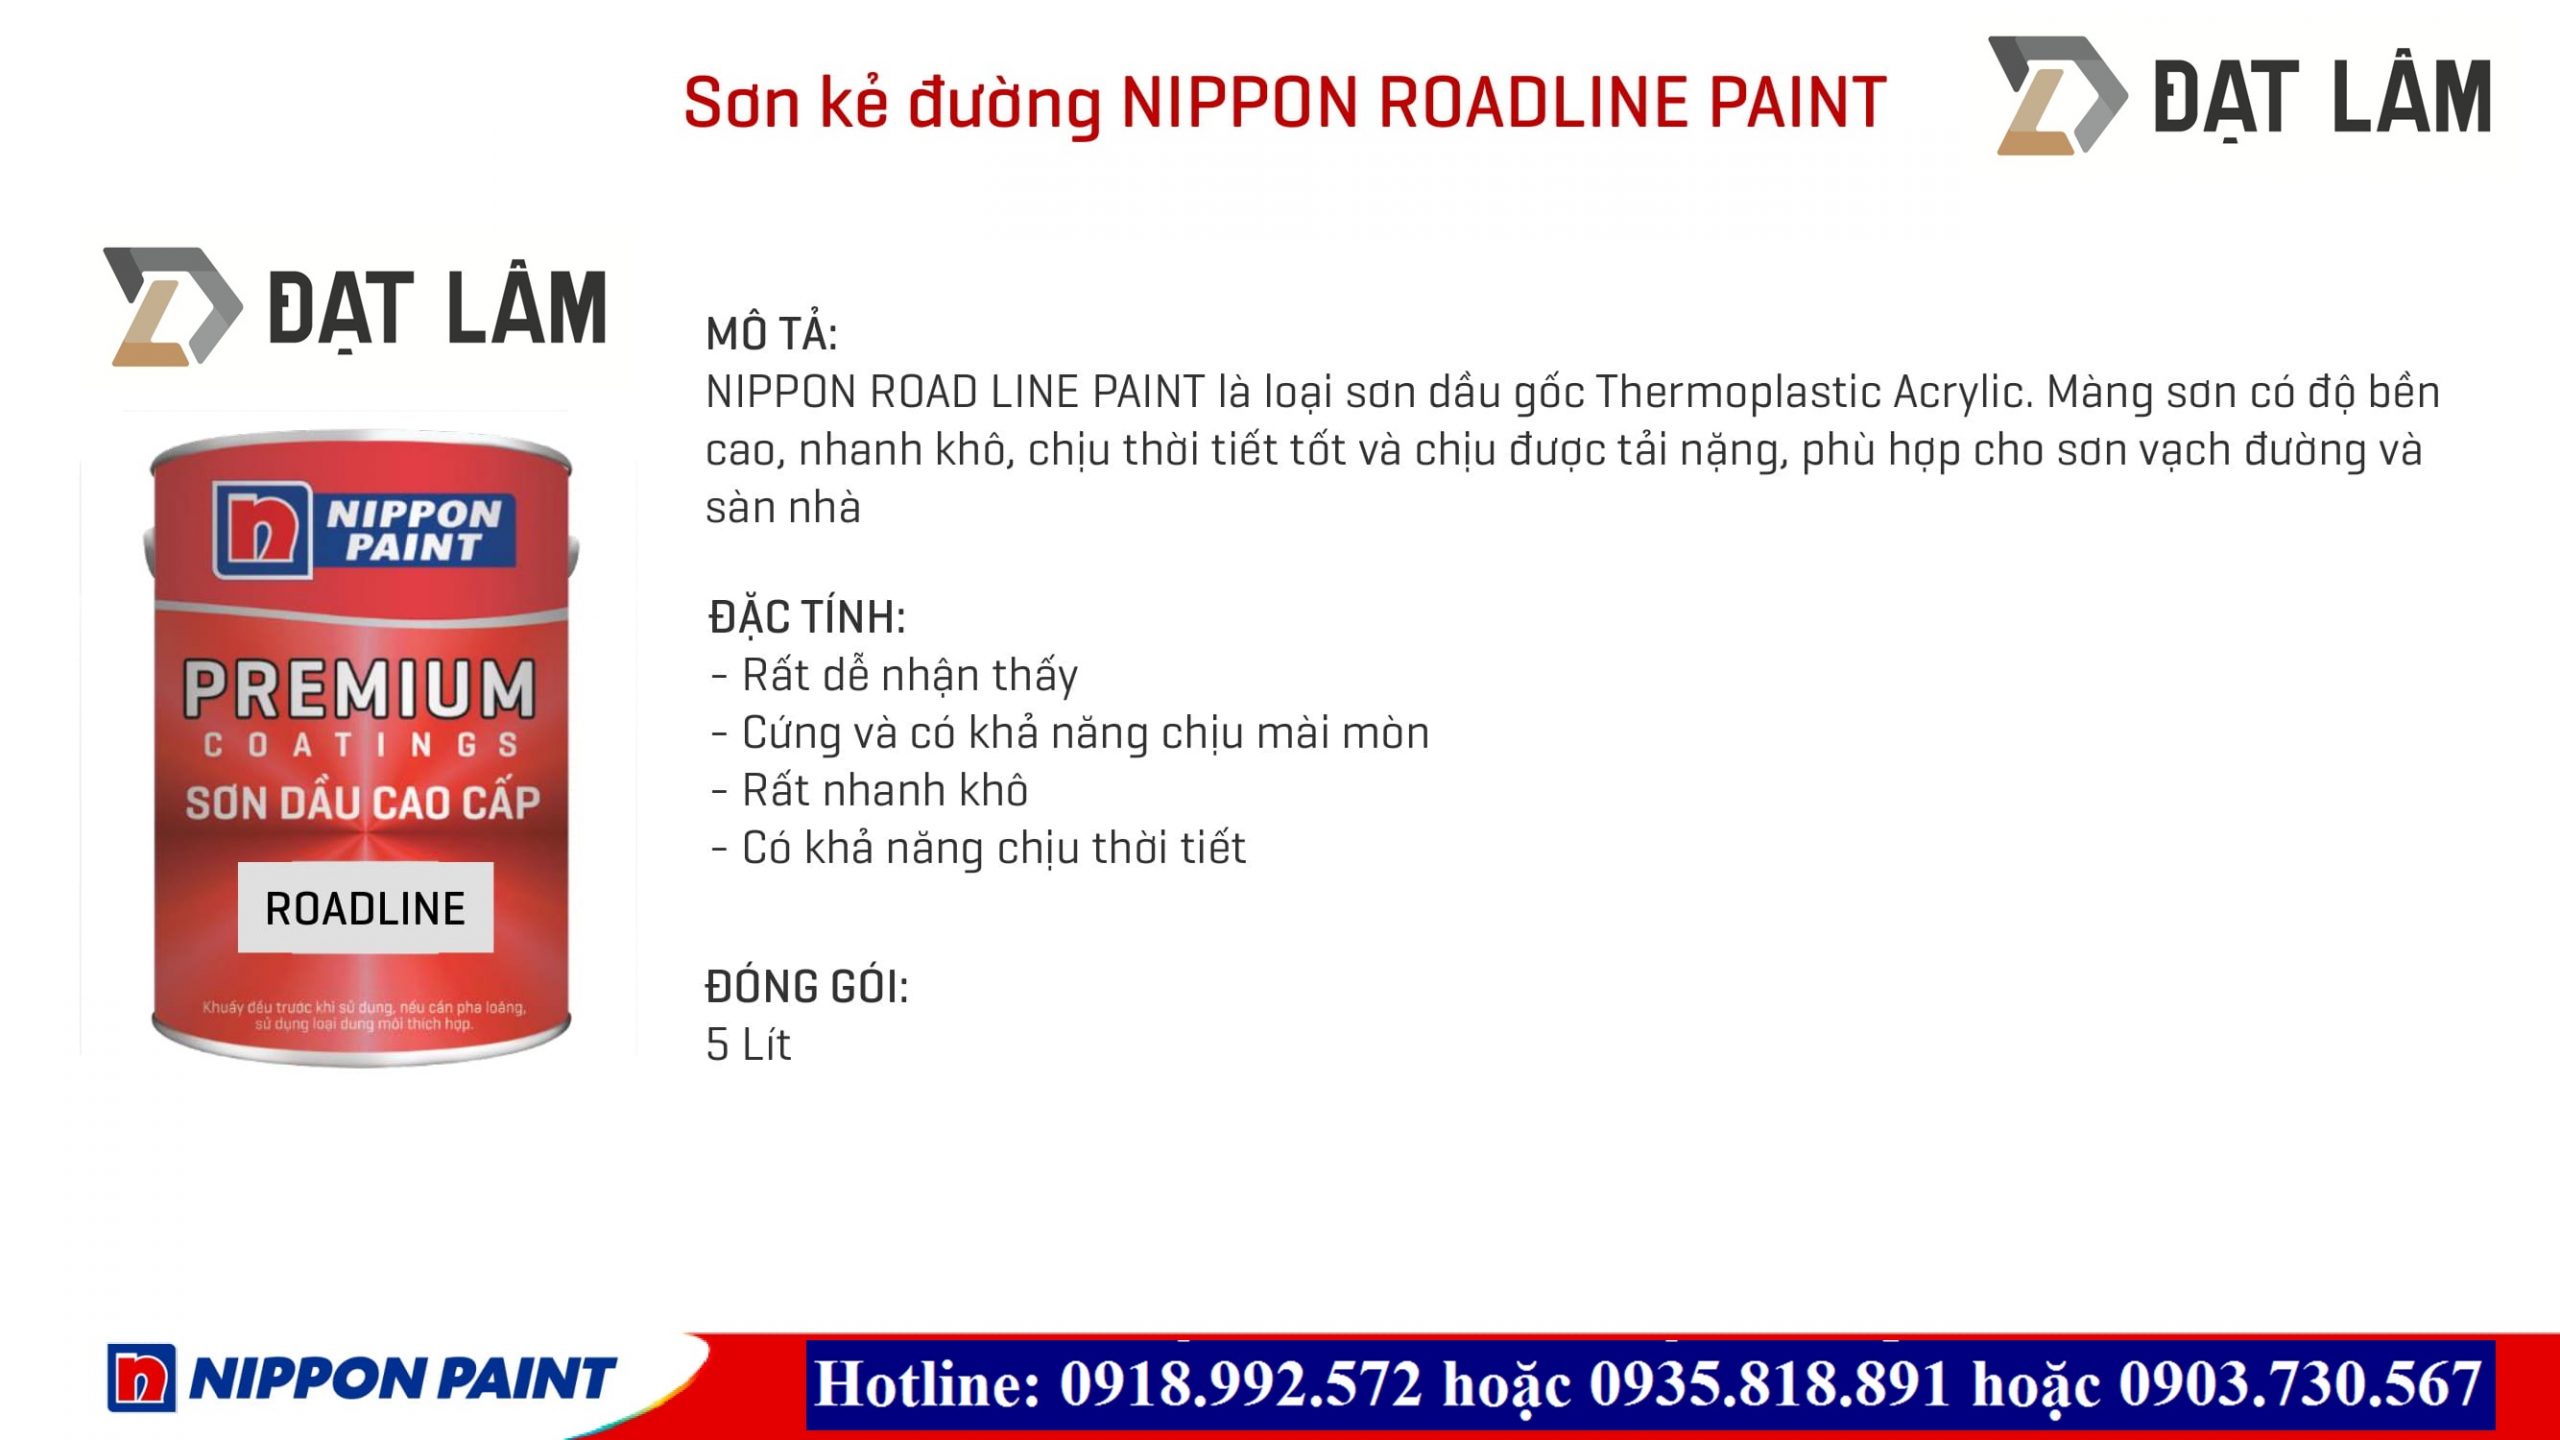 sơn kẻ vạch Nippon Road Line